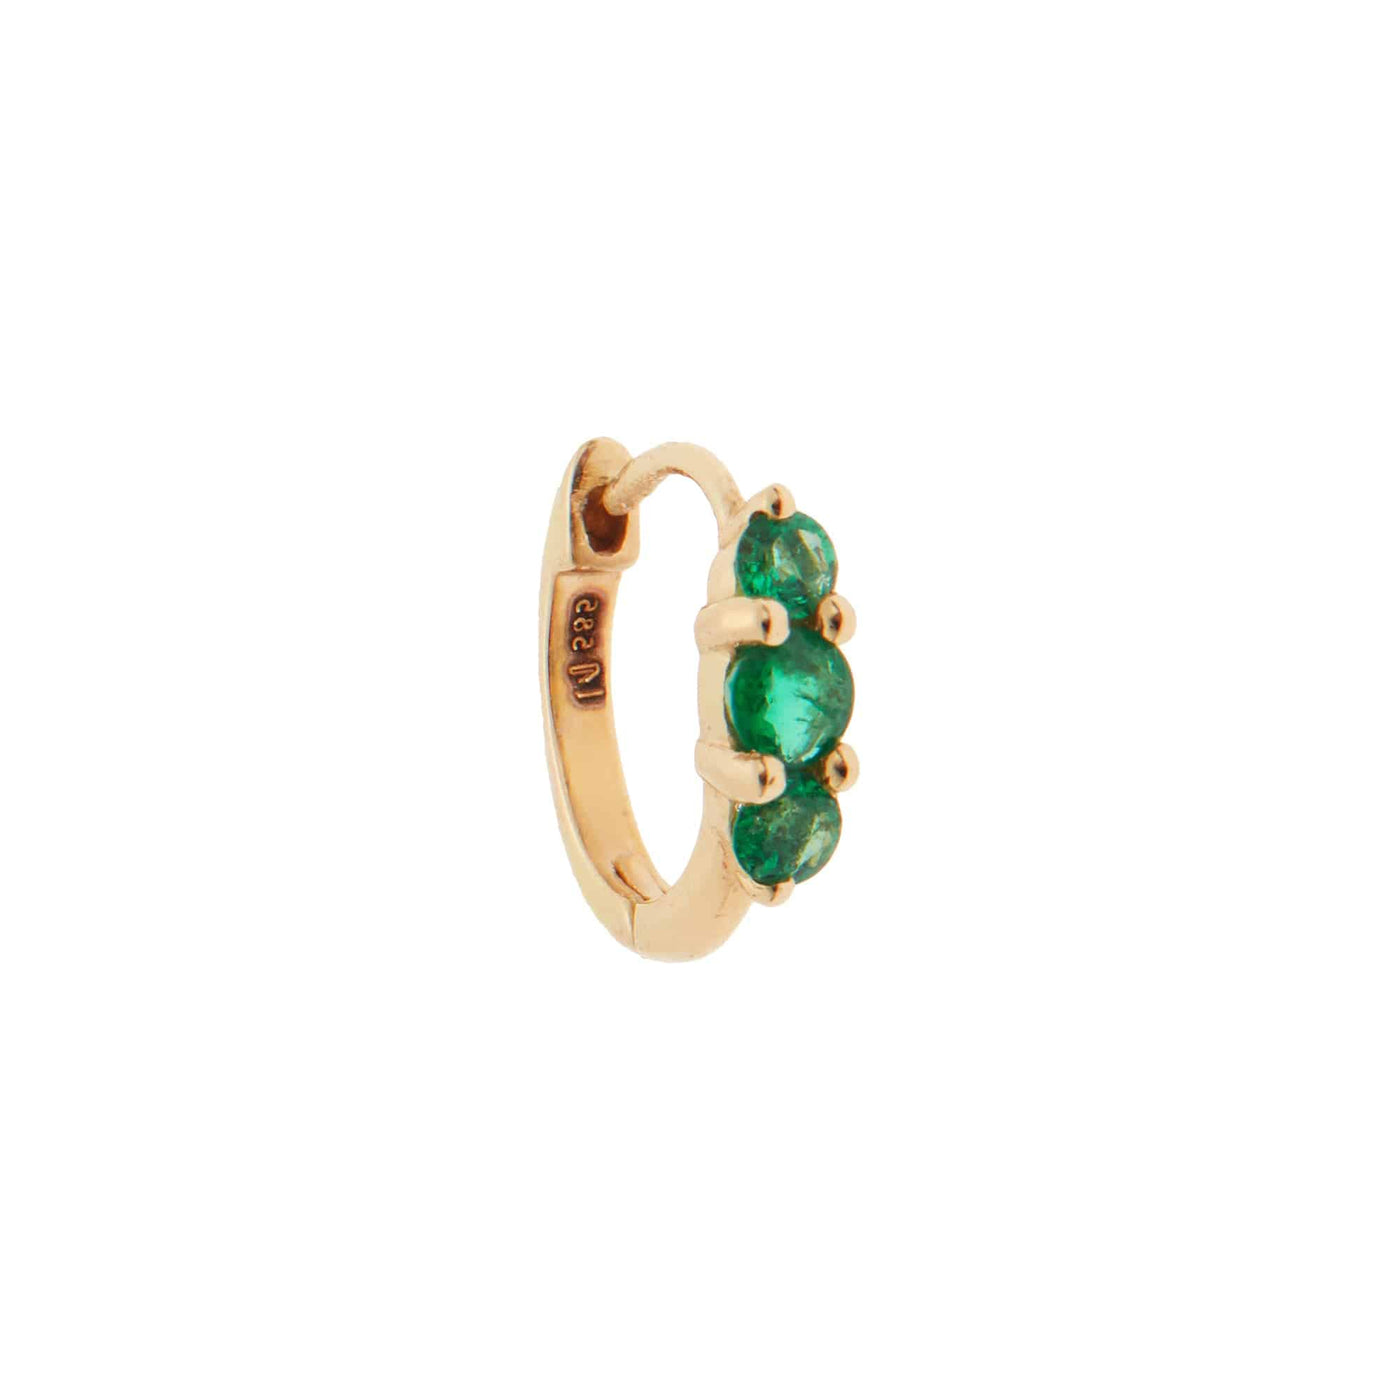 Small Oval Hoops 3 Emerald Rivulet - Rivulet - Ileana Makri store